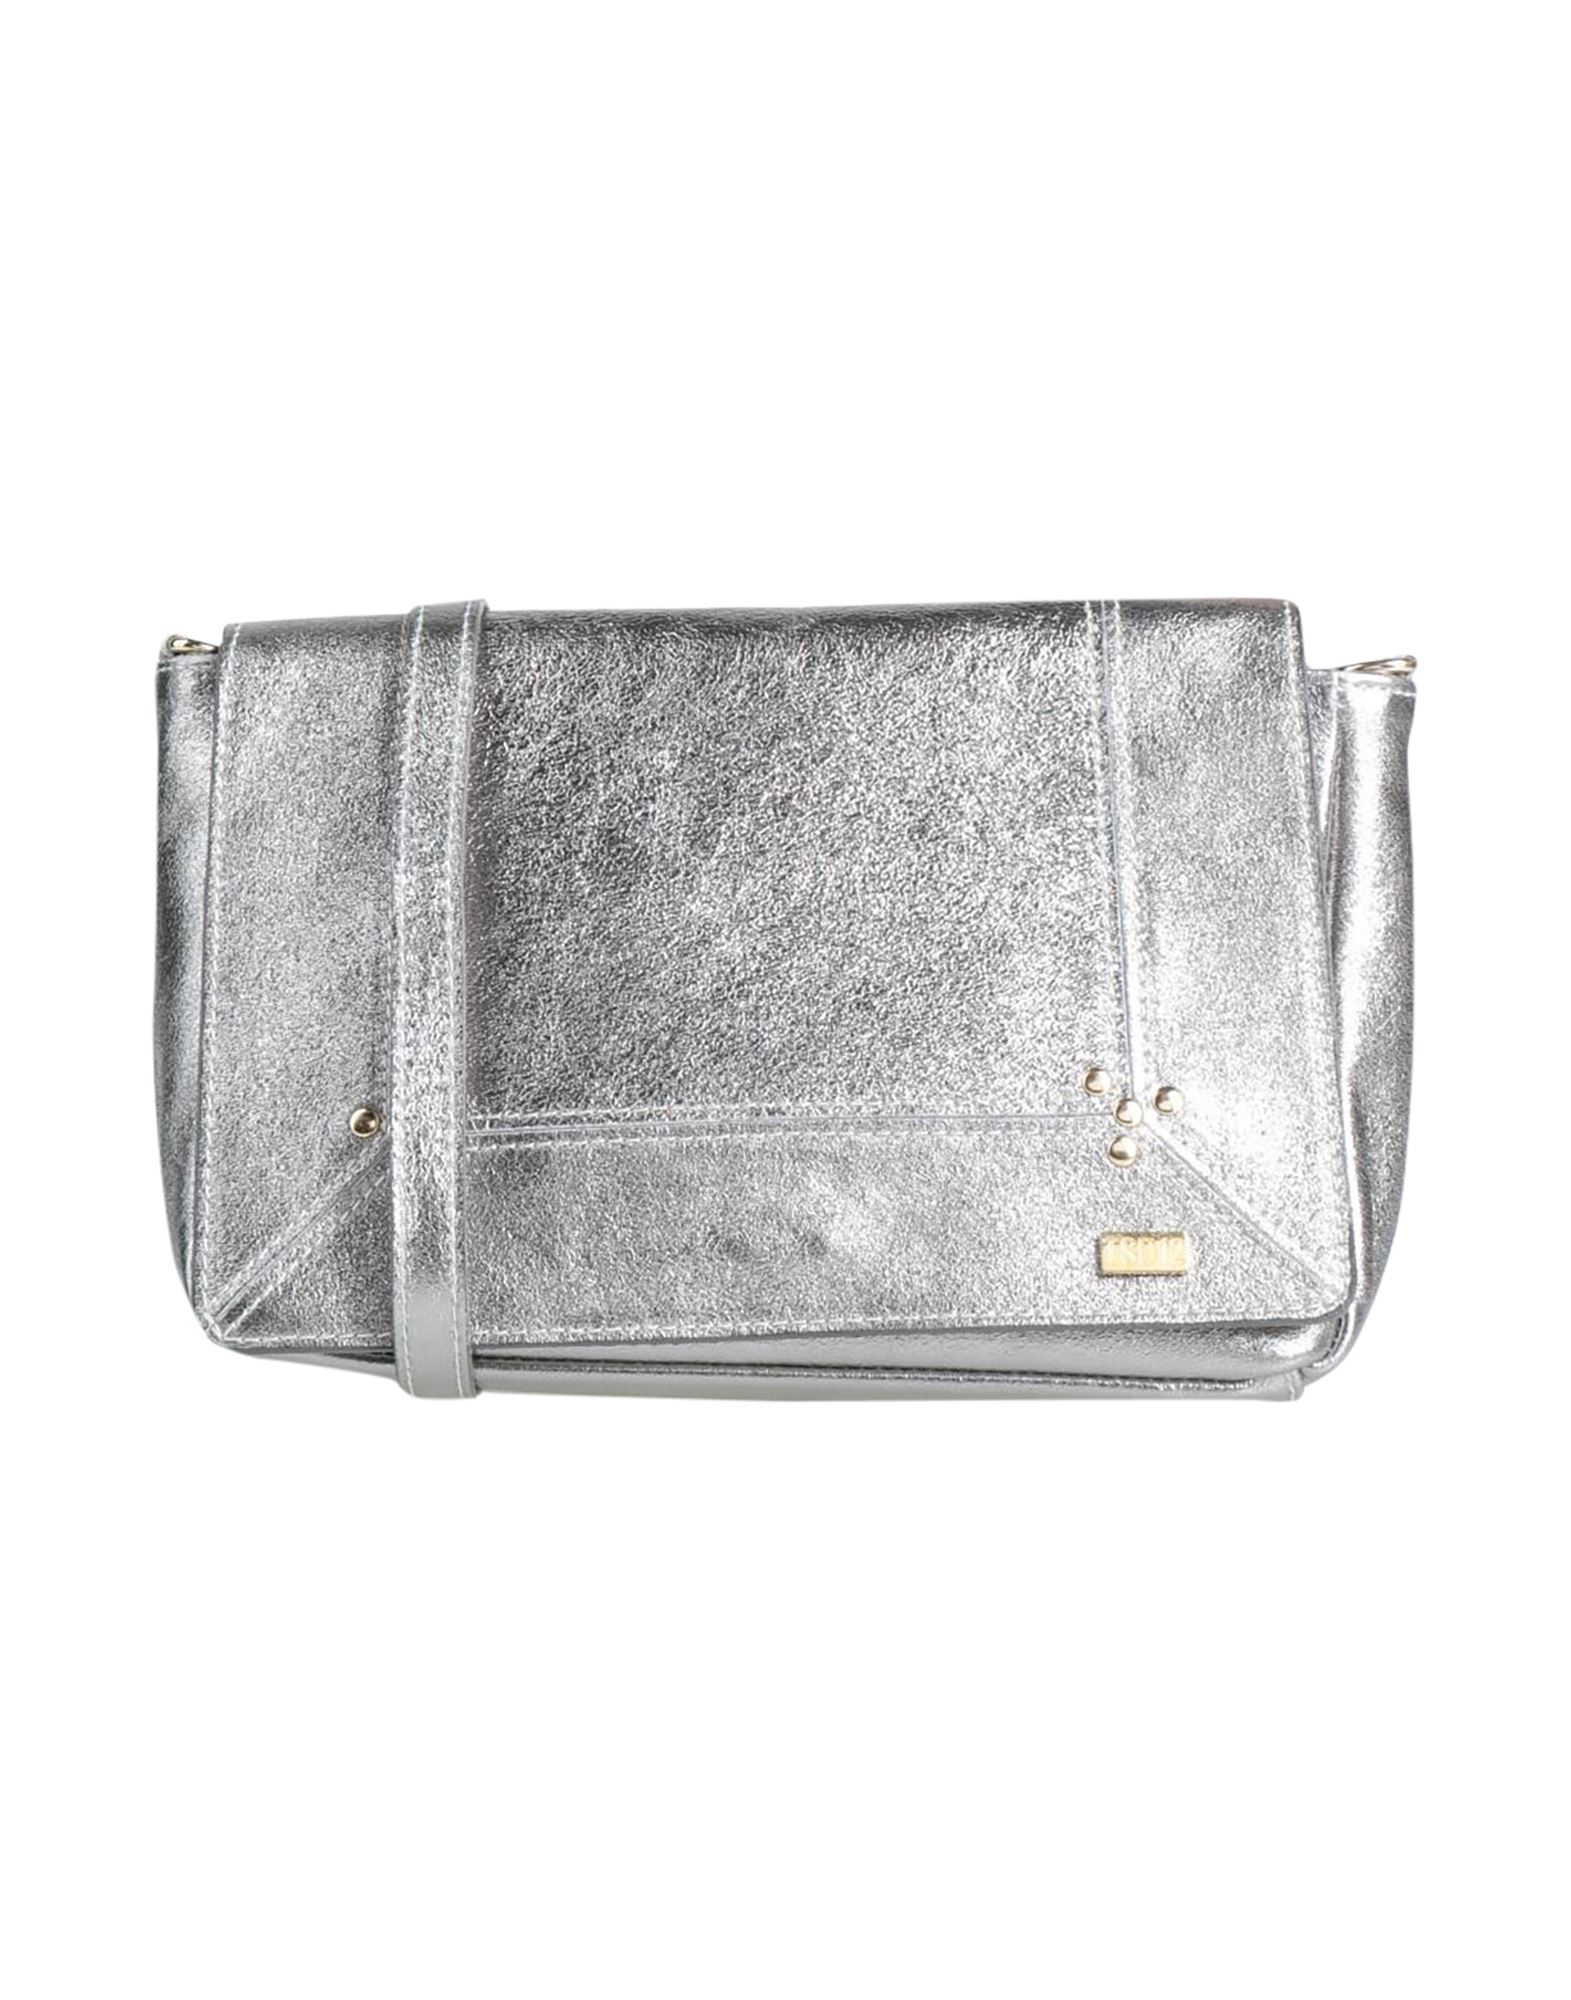 Tsd12 Handbags In Silver